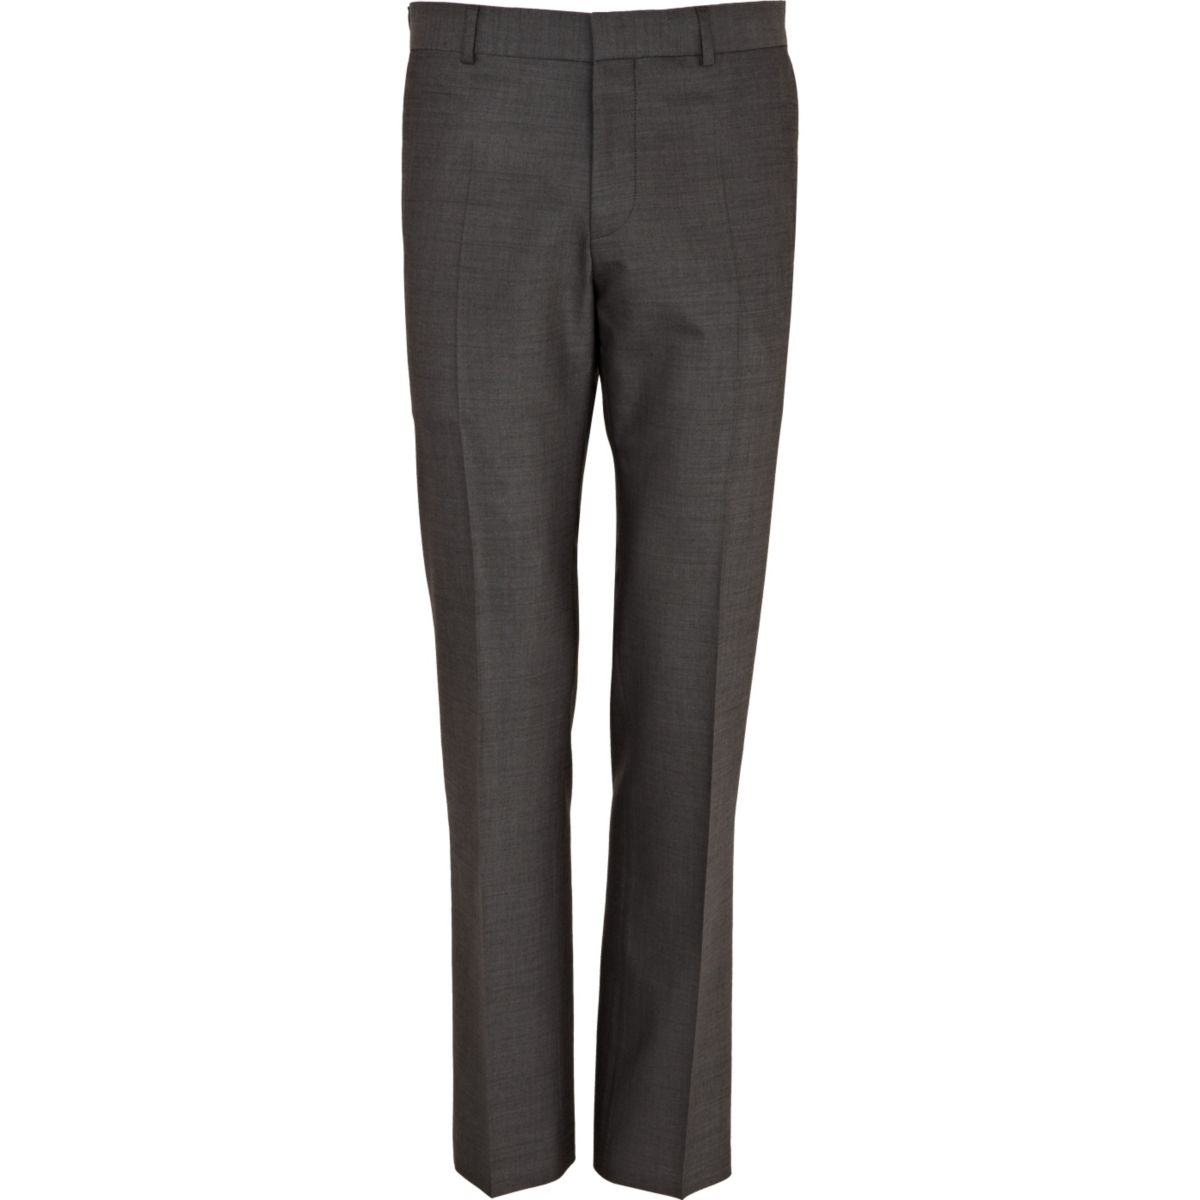 Grey wool-blend slim suit pants - Suits - Sale - men